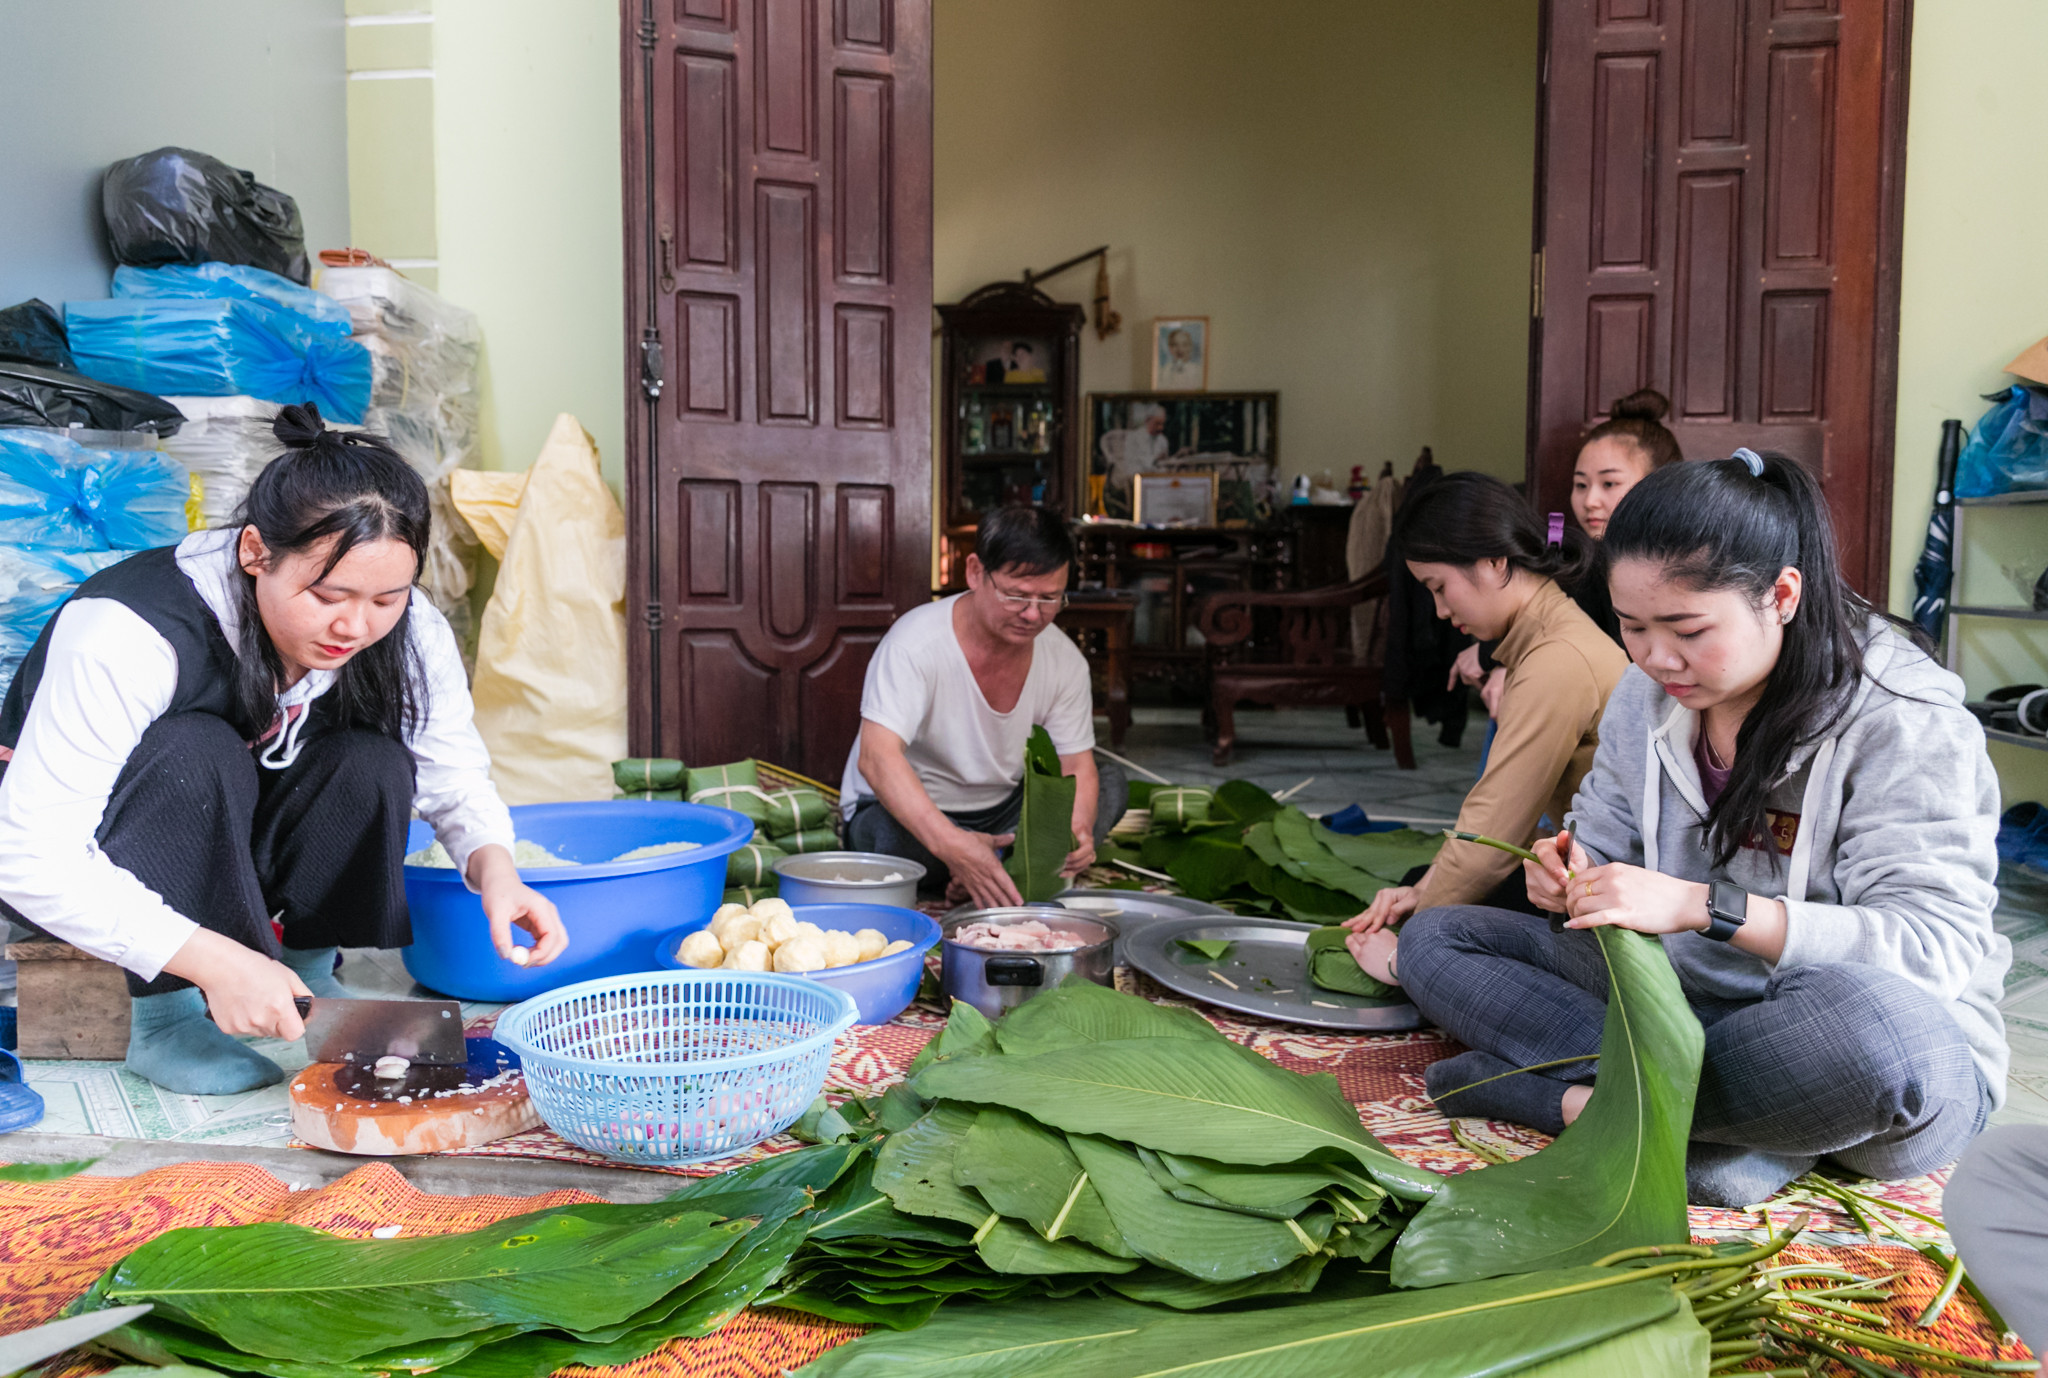 Những năm trước, khoảng 15 tháng Chạp gia đình bác Nguyễn Đình Thành đã mua khoảng 2 tạ nếp để gói bánh chưng gửi về cho các con ăn Tết ở Lào. Ảnh: Đức Anh